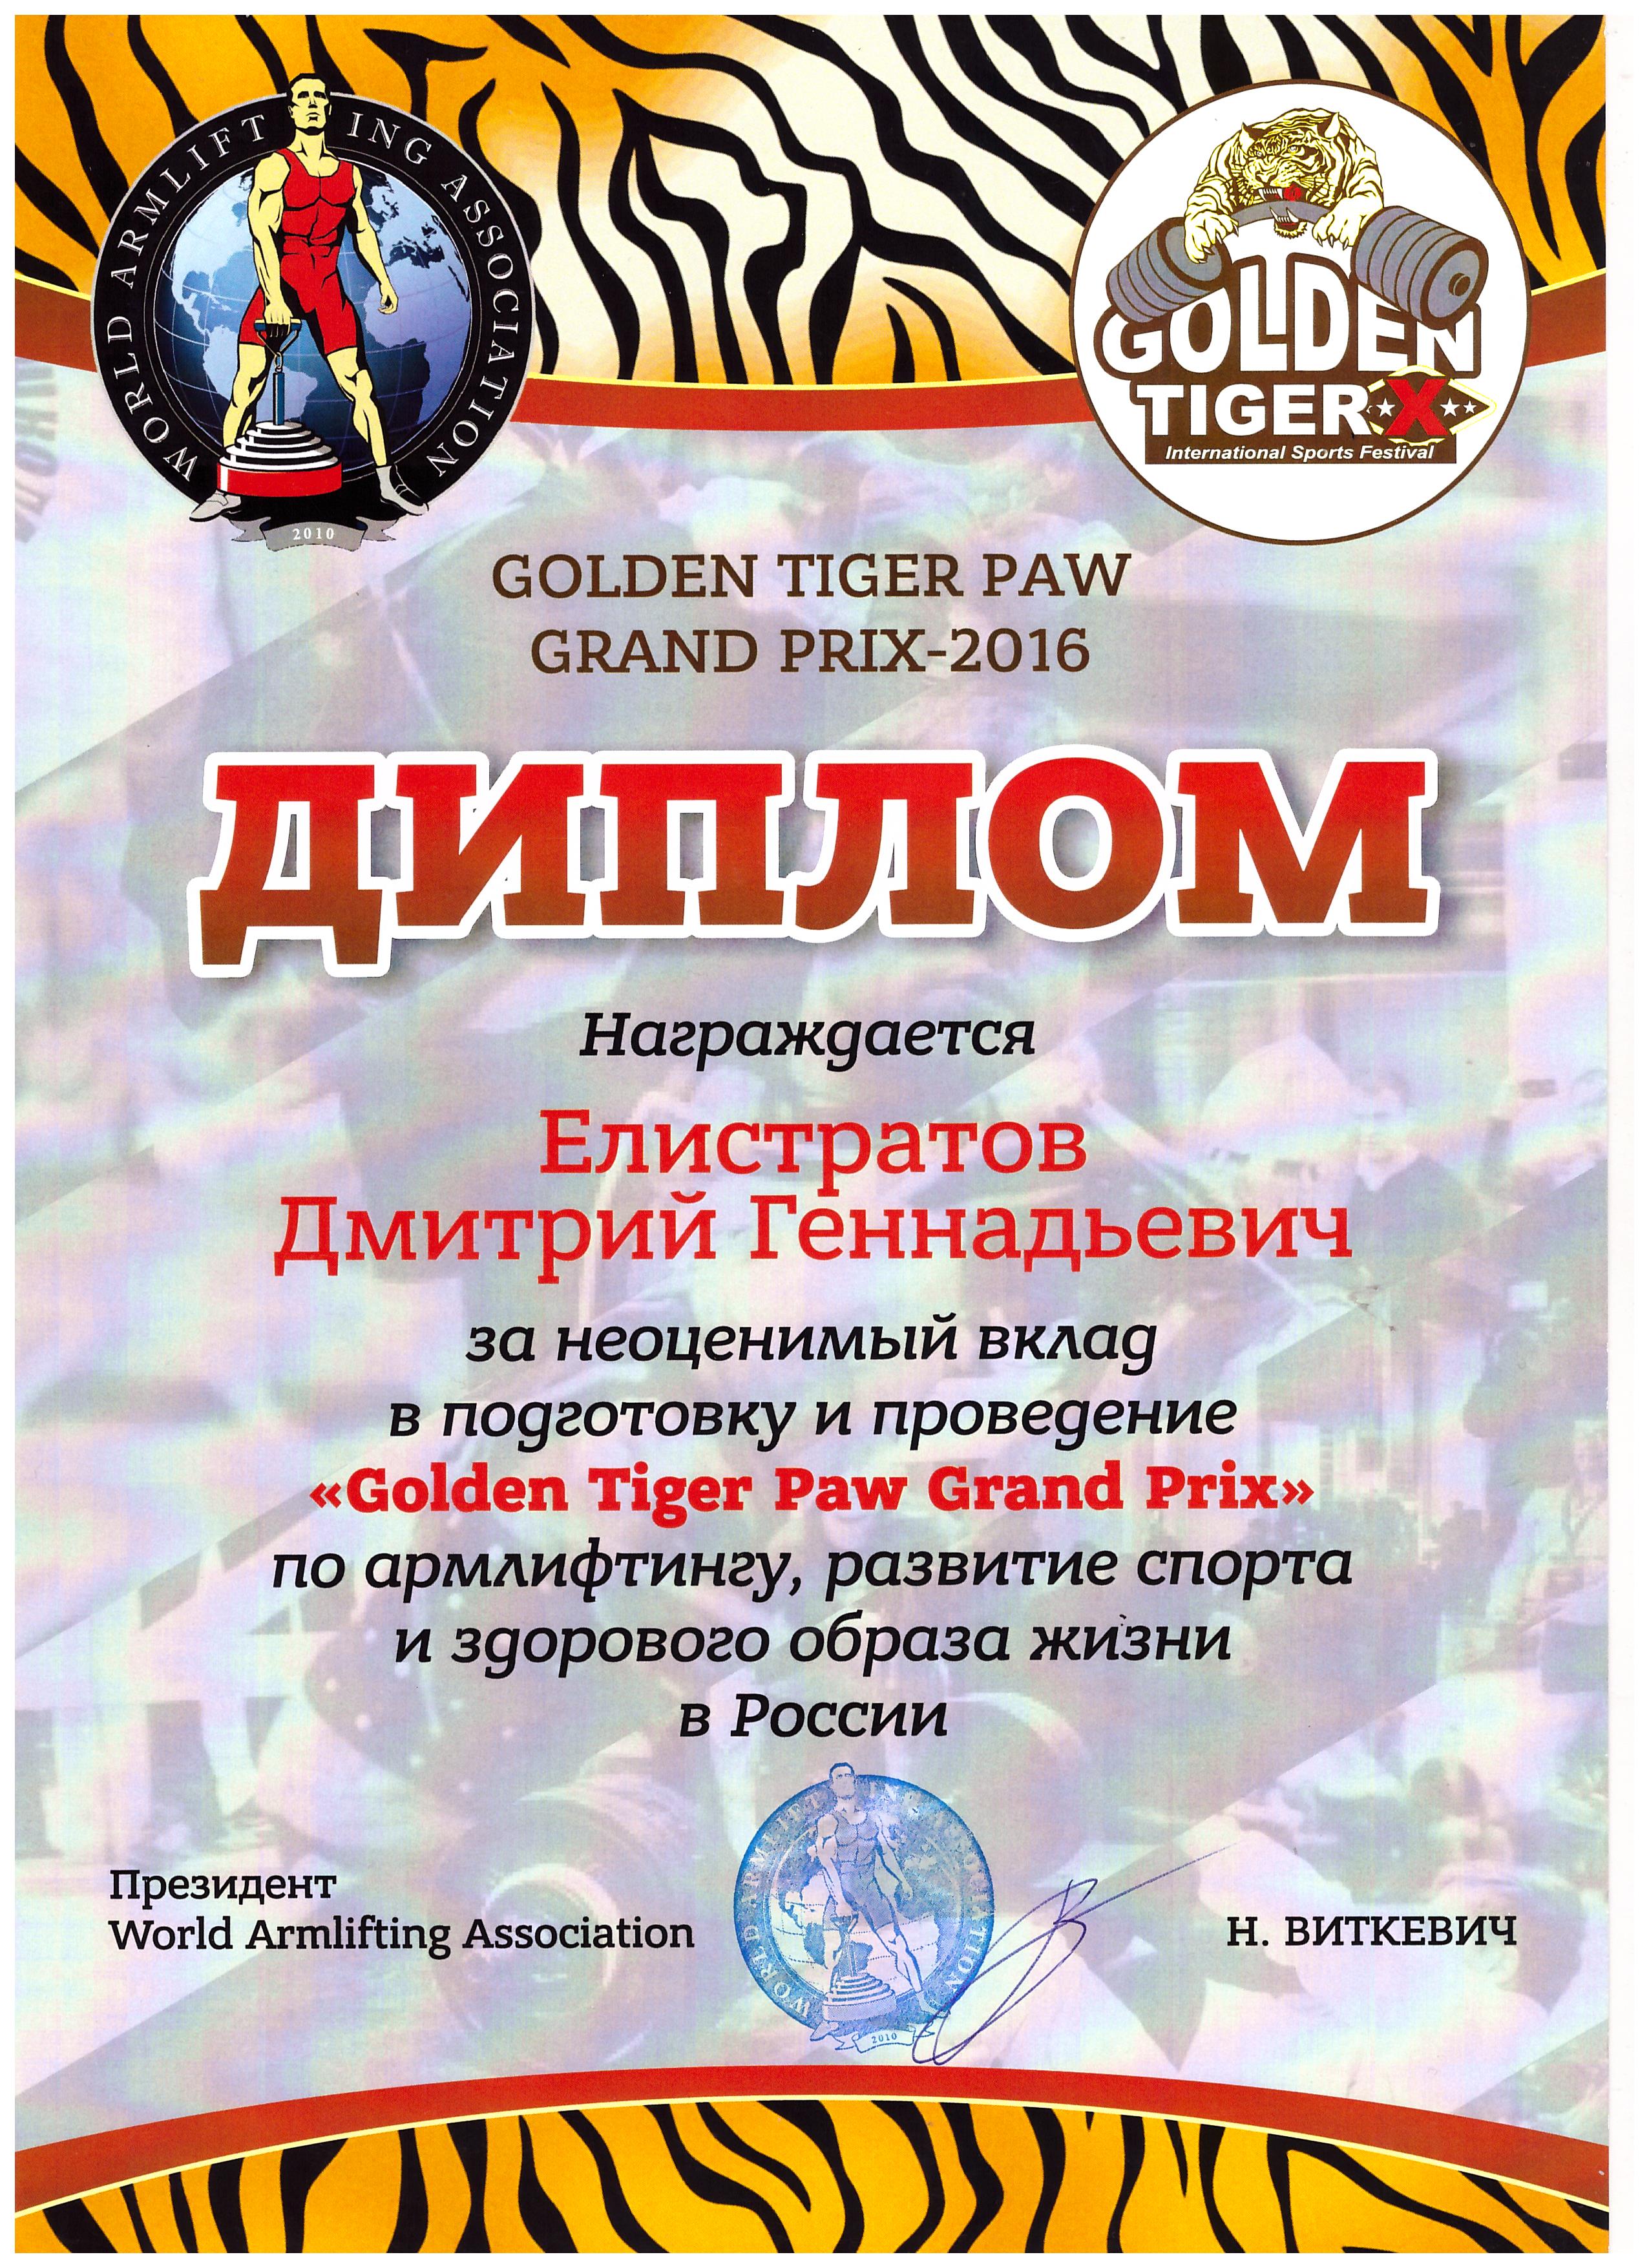 Диплом Елистратову Дмитрию Геннадьевичу за неоценимый вклад в подготовку и проведение "Golden Tiger Paw Grand Prix"